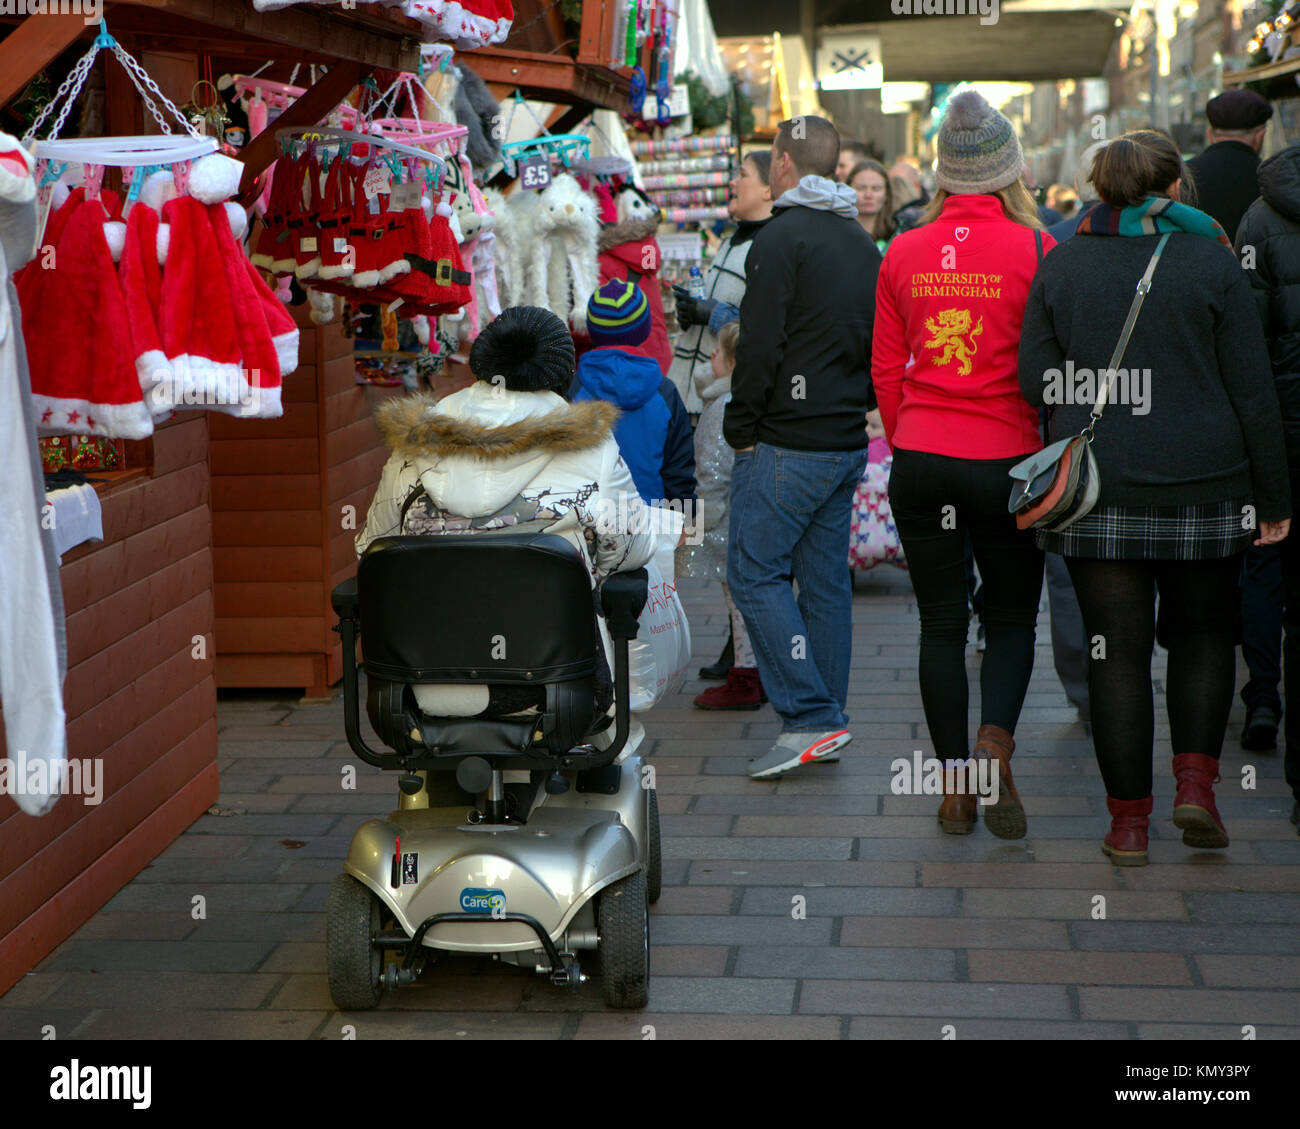 Location de véhicule non valide d'invalidité luttant dans foule marché de noël glasgow stalles et personnes Banque D'Images